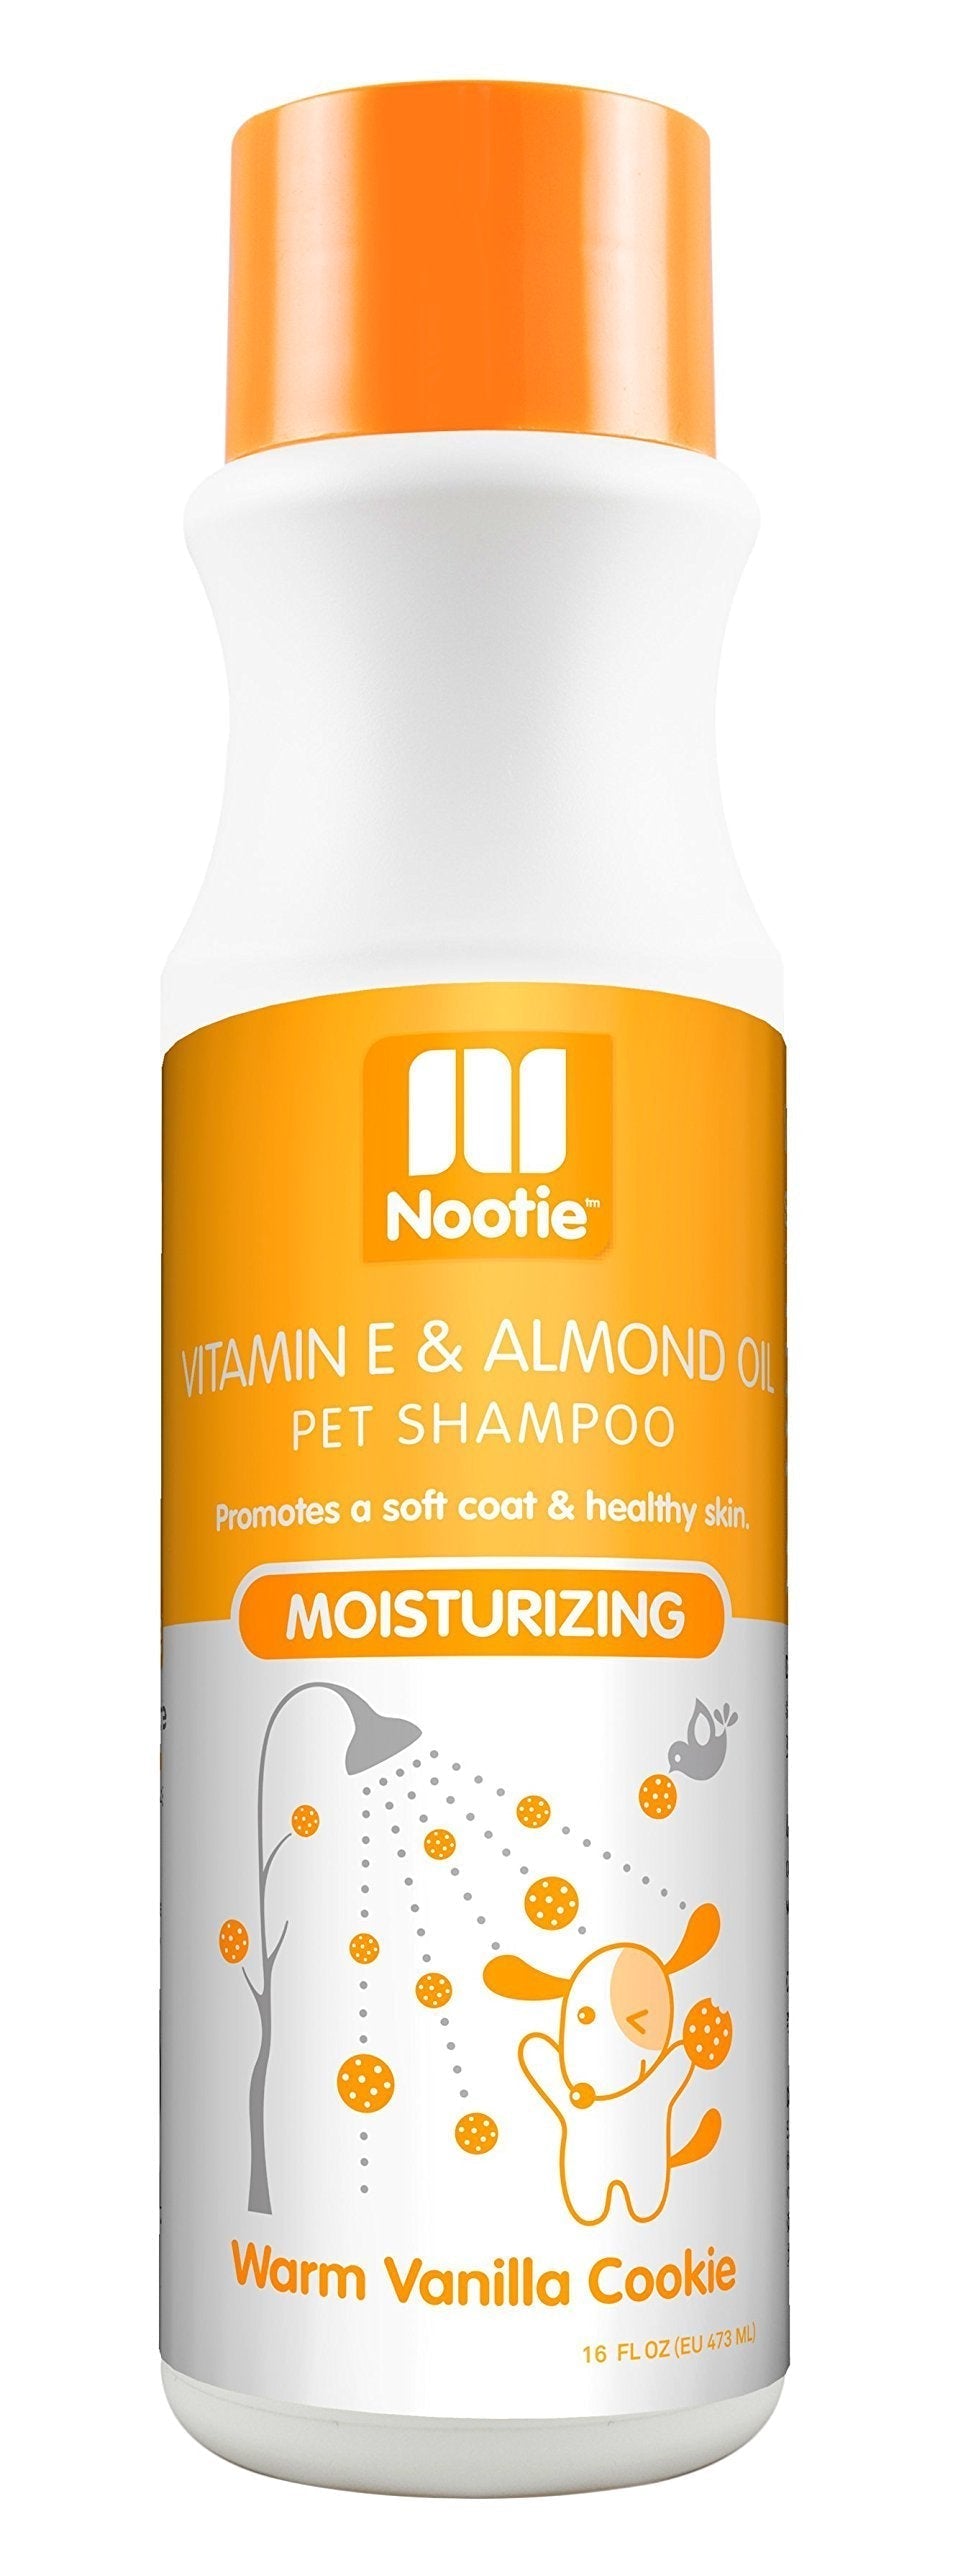 [Australia] - Nootie- Pet Shampoo, 1 Unit 16oz, Warm Vanilla Cookie 